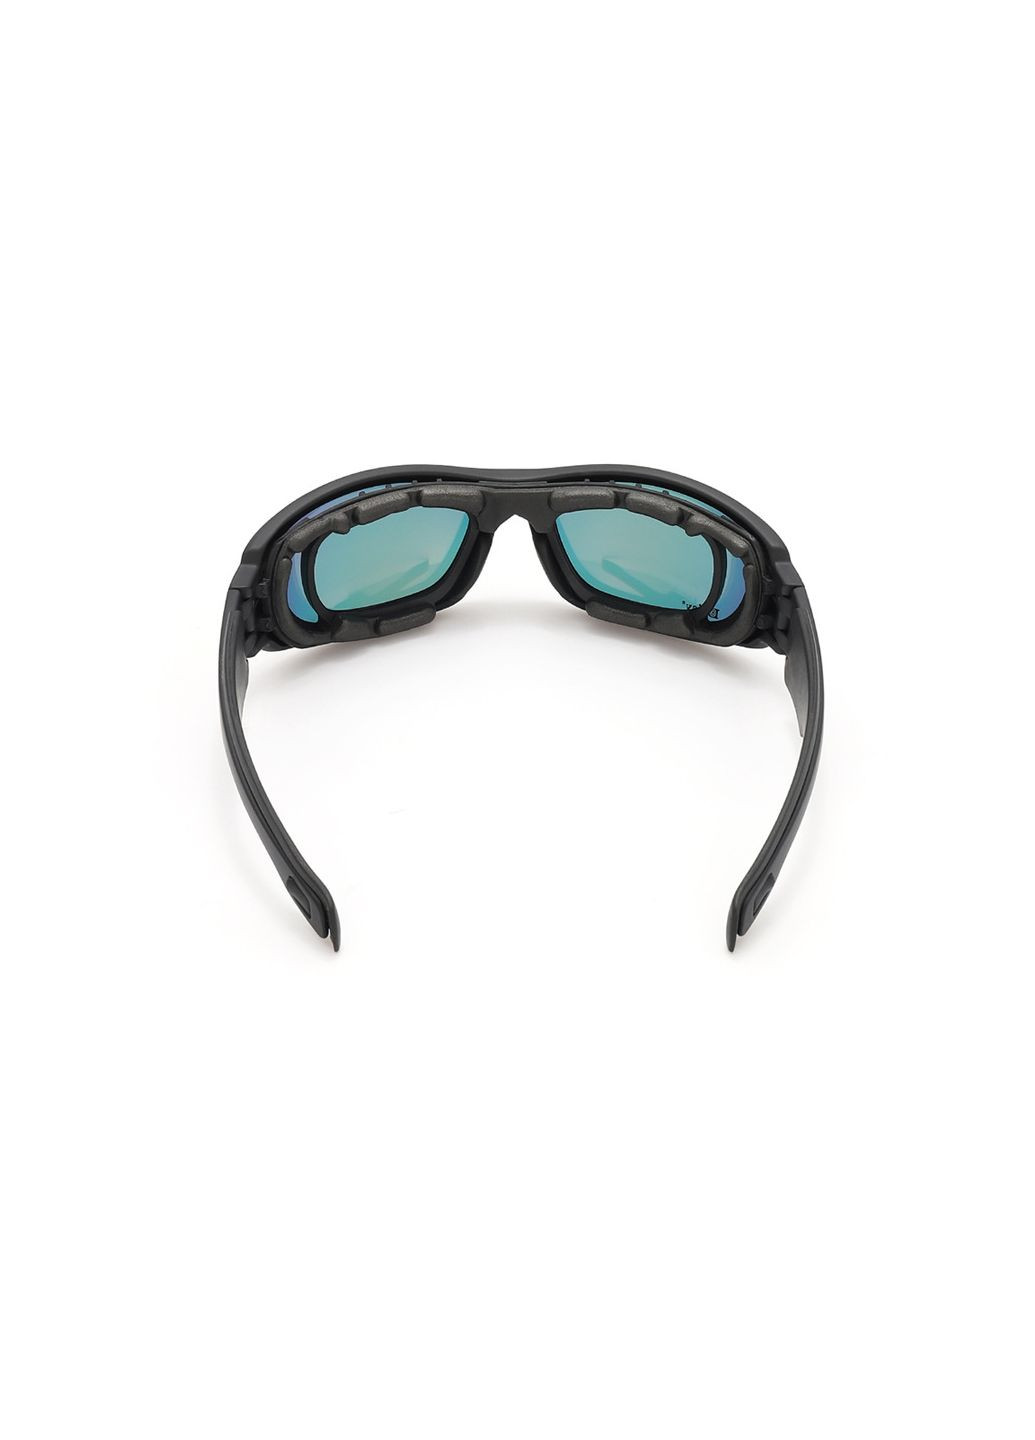 Тактические очки С6, солнцезащитные с поляризацией, 4 сменные линзы. Daisy (280826677)